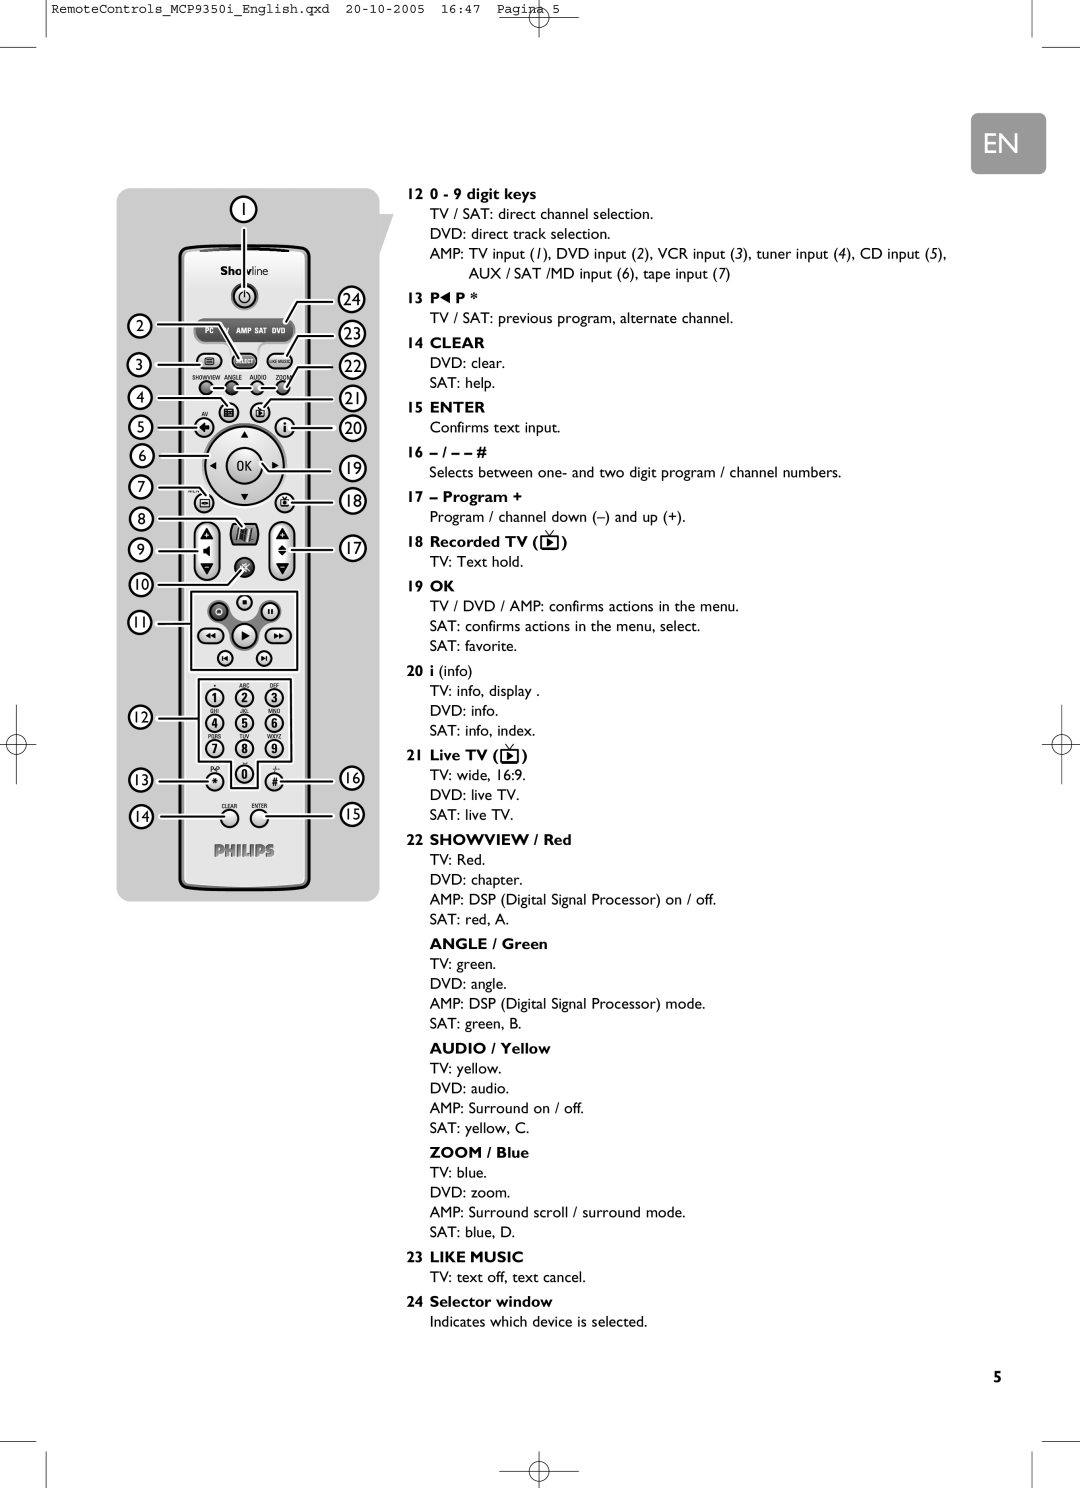 Philips RC4370 user manual 0 - 9 digit keys 